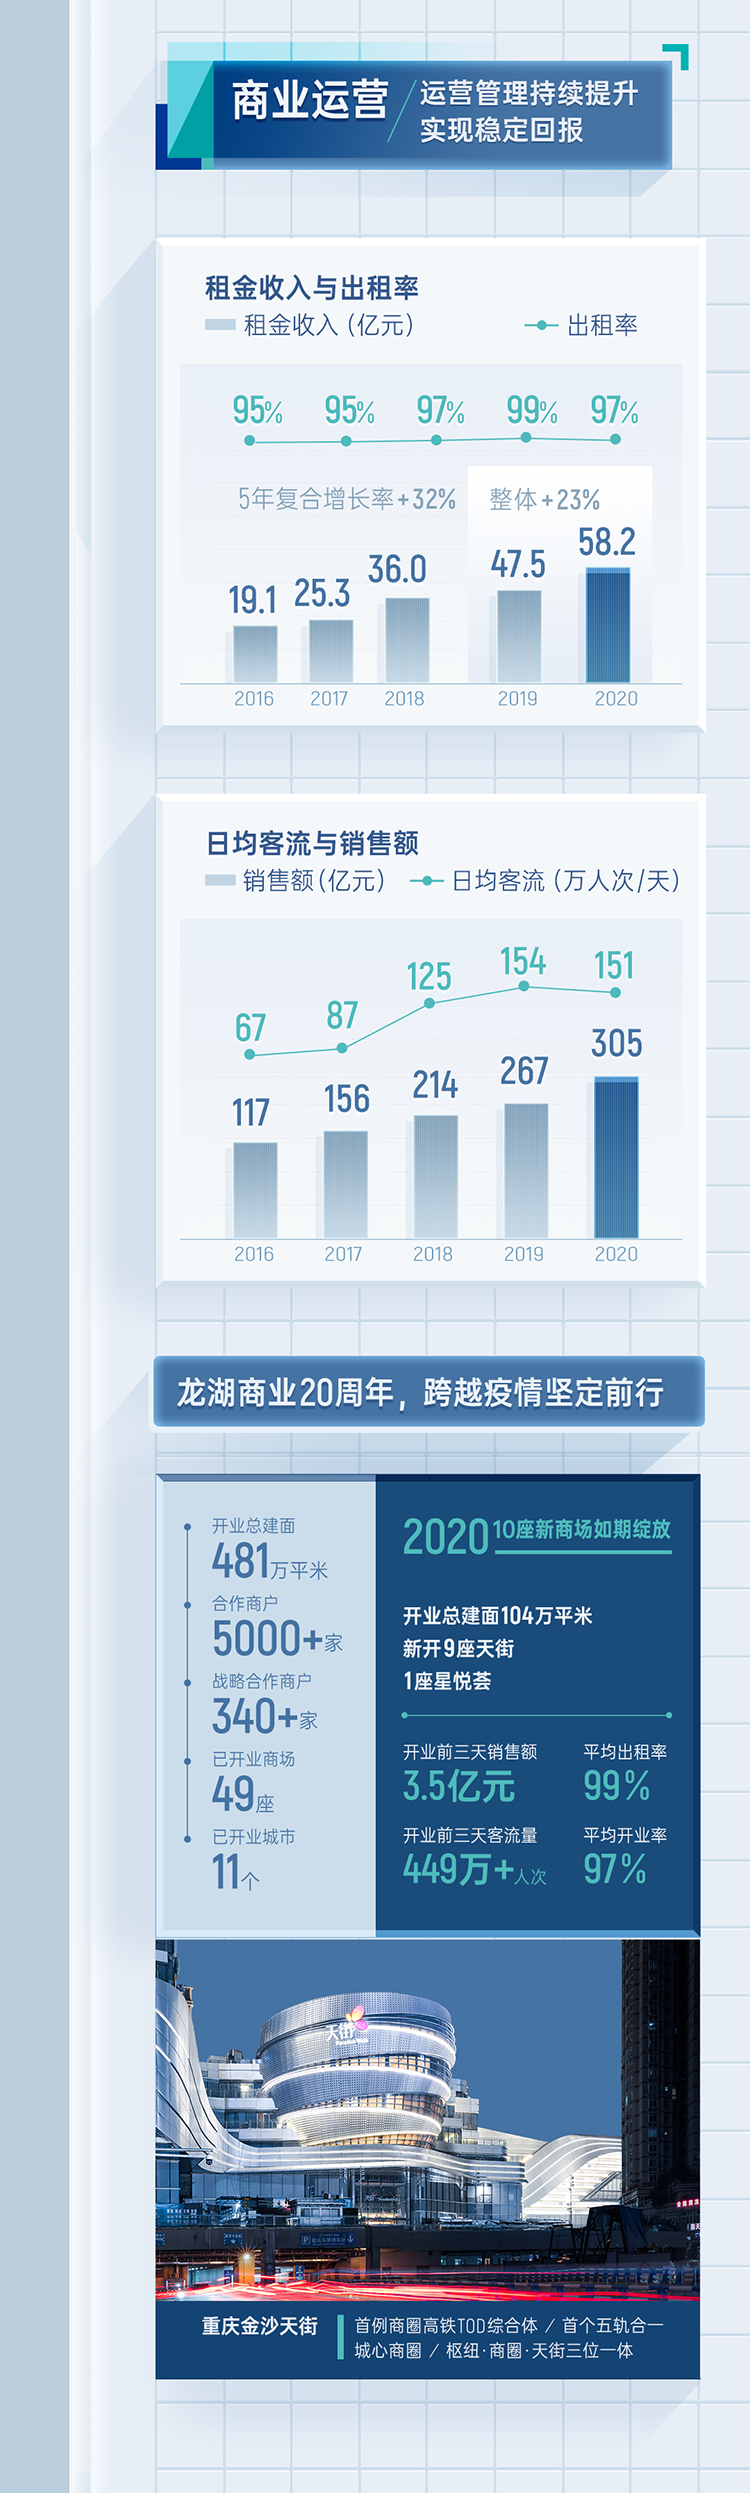 龙湖集团发布2020年度业绩